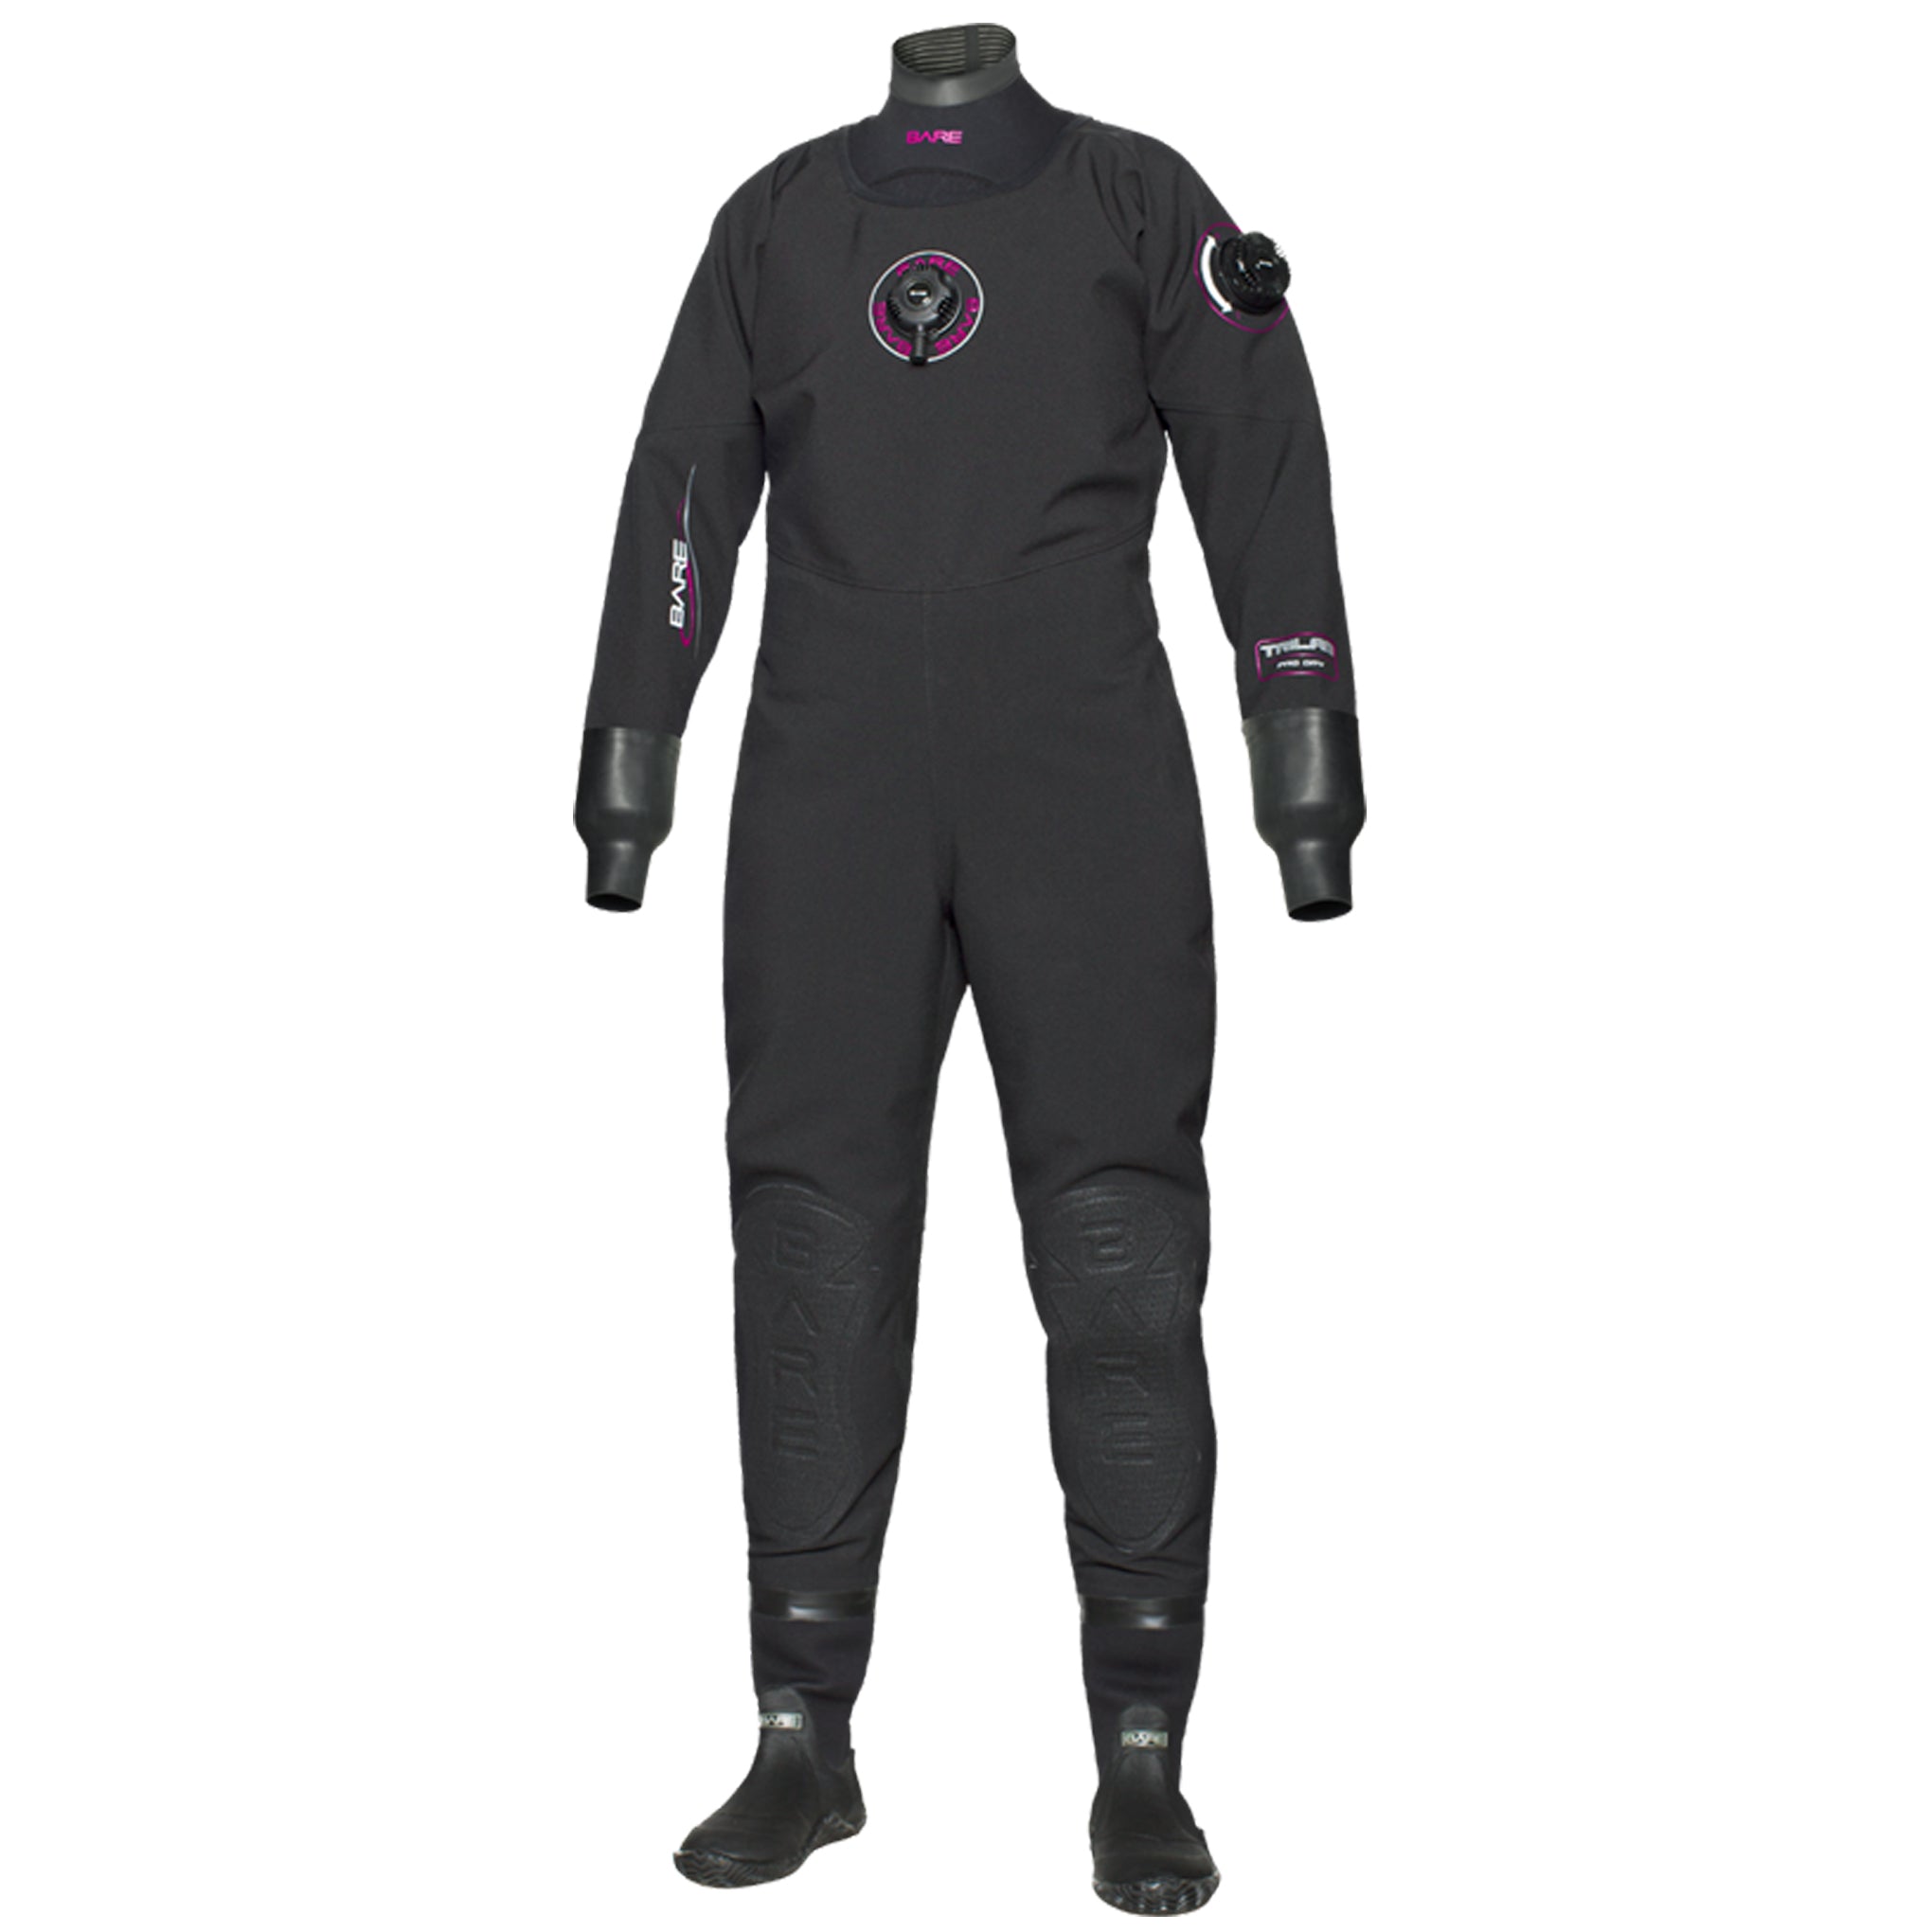 Trilam Pro Drysuit - Women's-Drysuit-Snorkeling, diver, sharkskin, scuba diving hk, warm protection, sharkskin, dive wear, bare wetsuit, aeroskin wetsuit, 浮潛